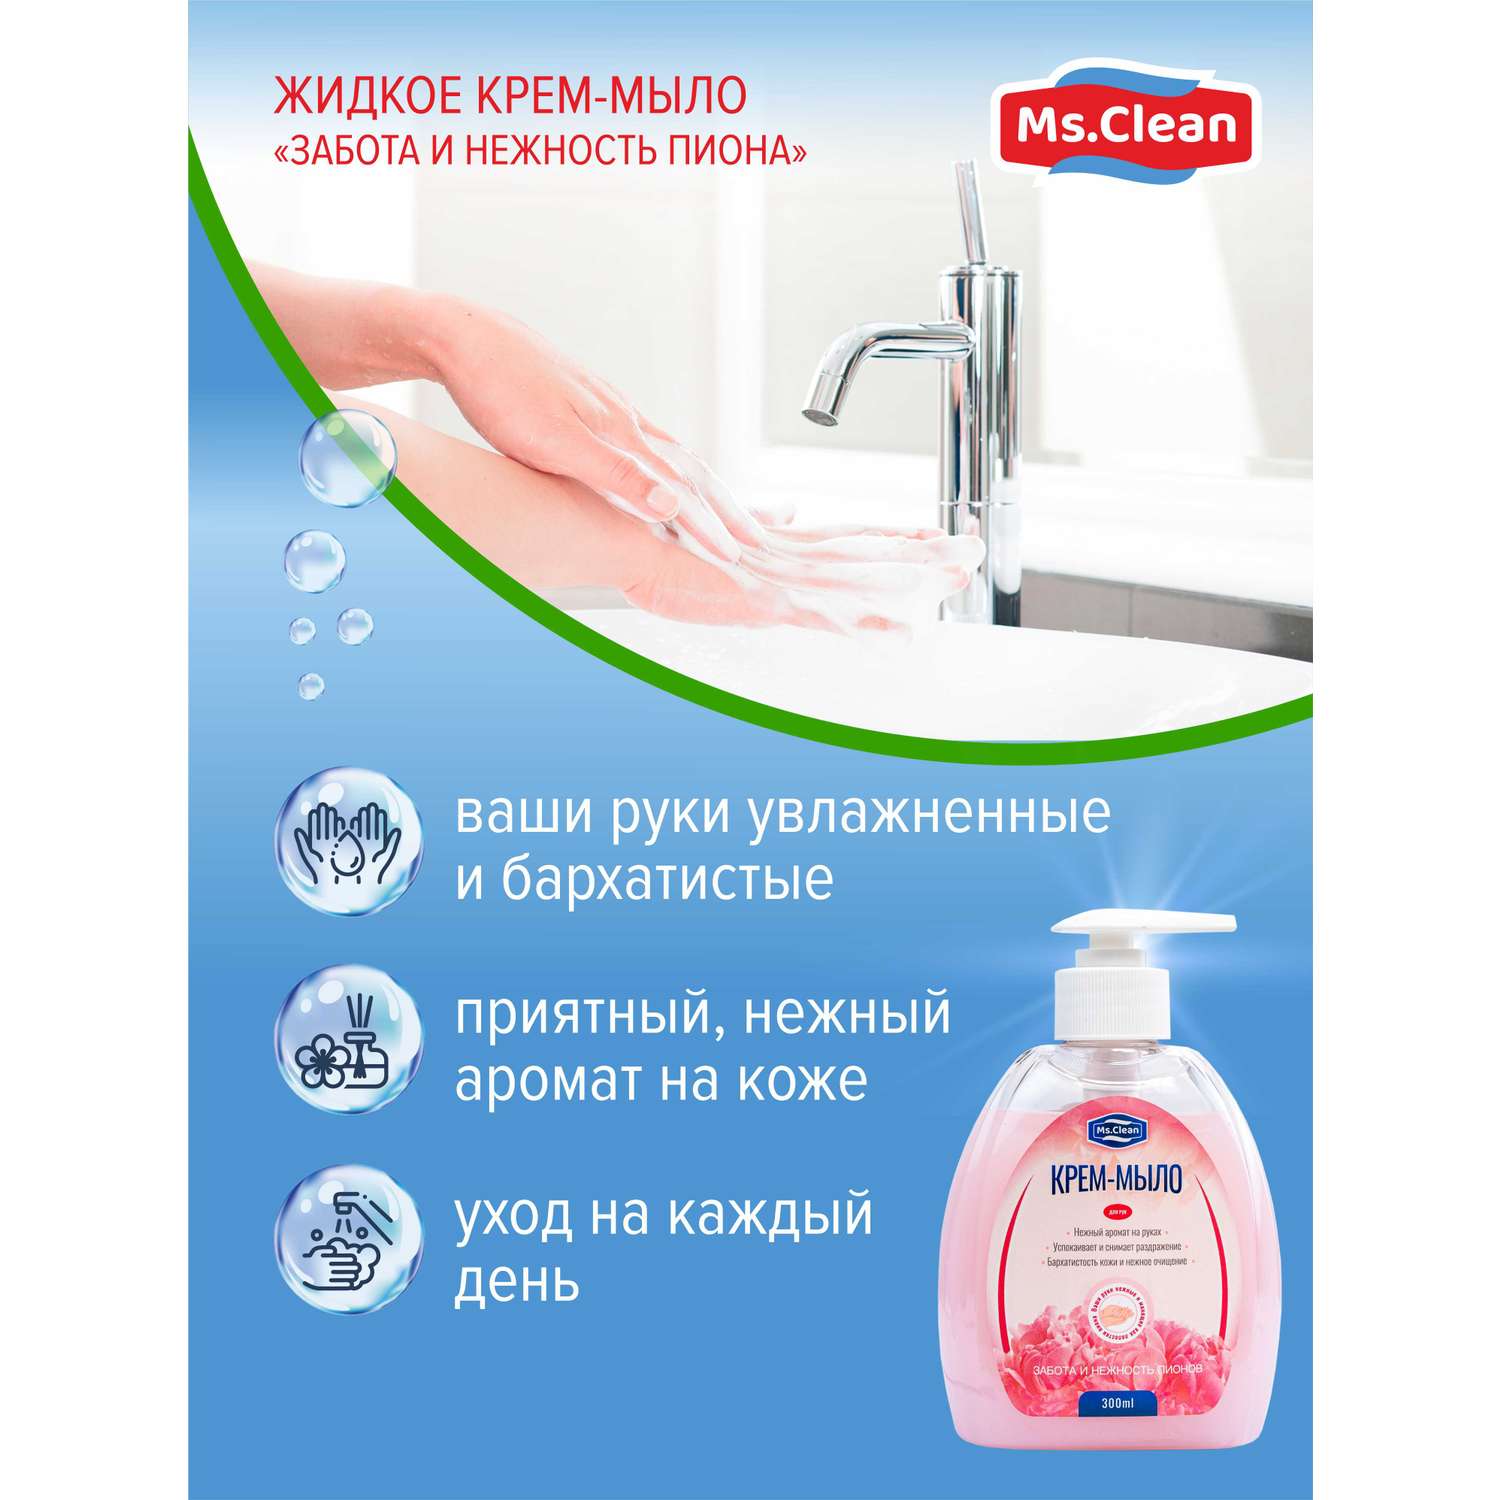 Крем-мыло для рук Ms.Clean забота и нежность пиона 300 мл - фото 4